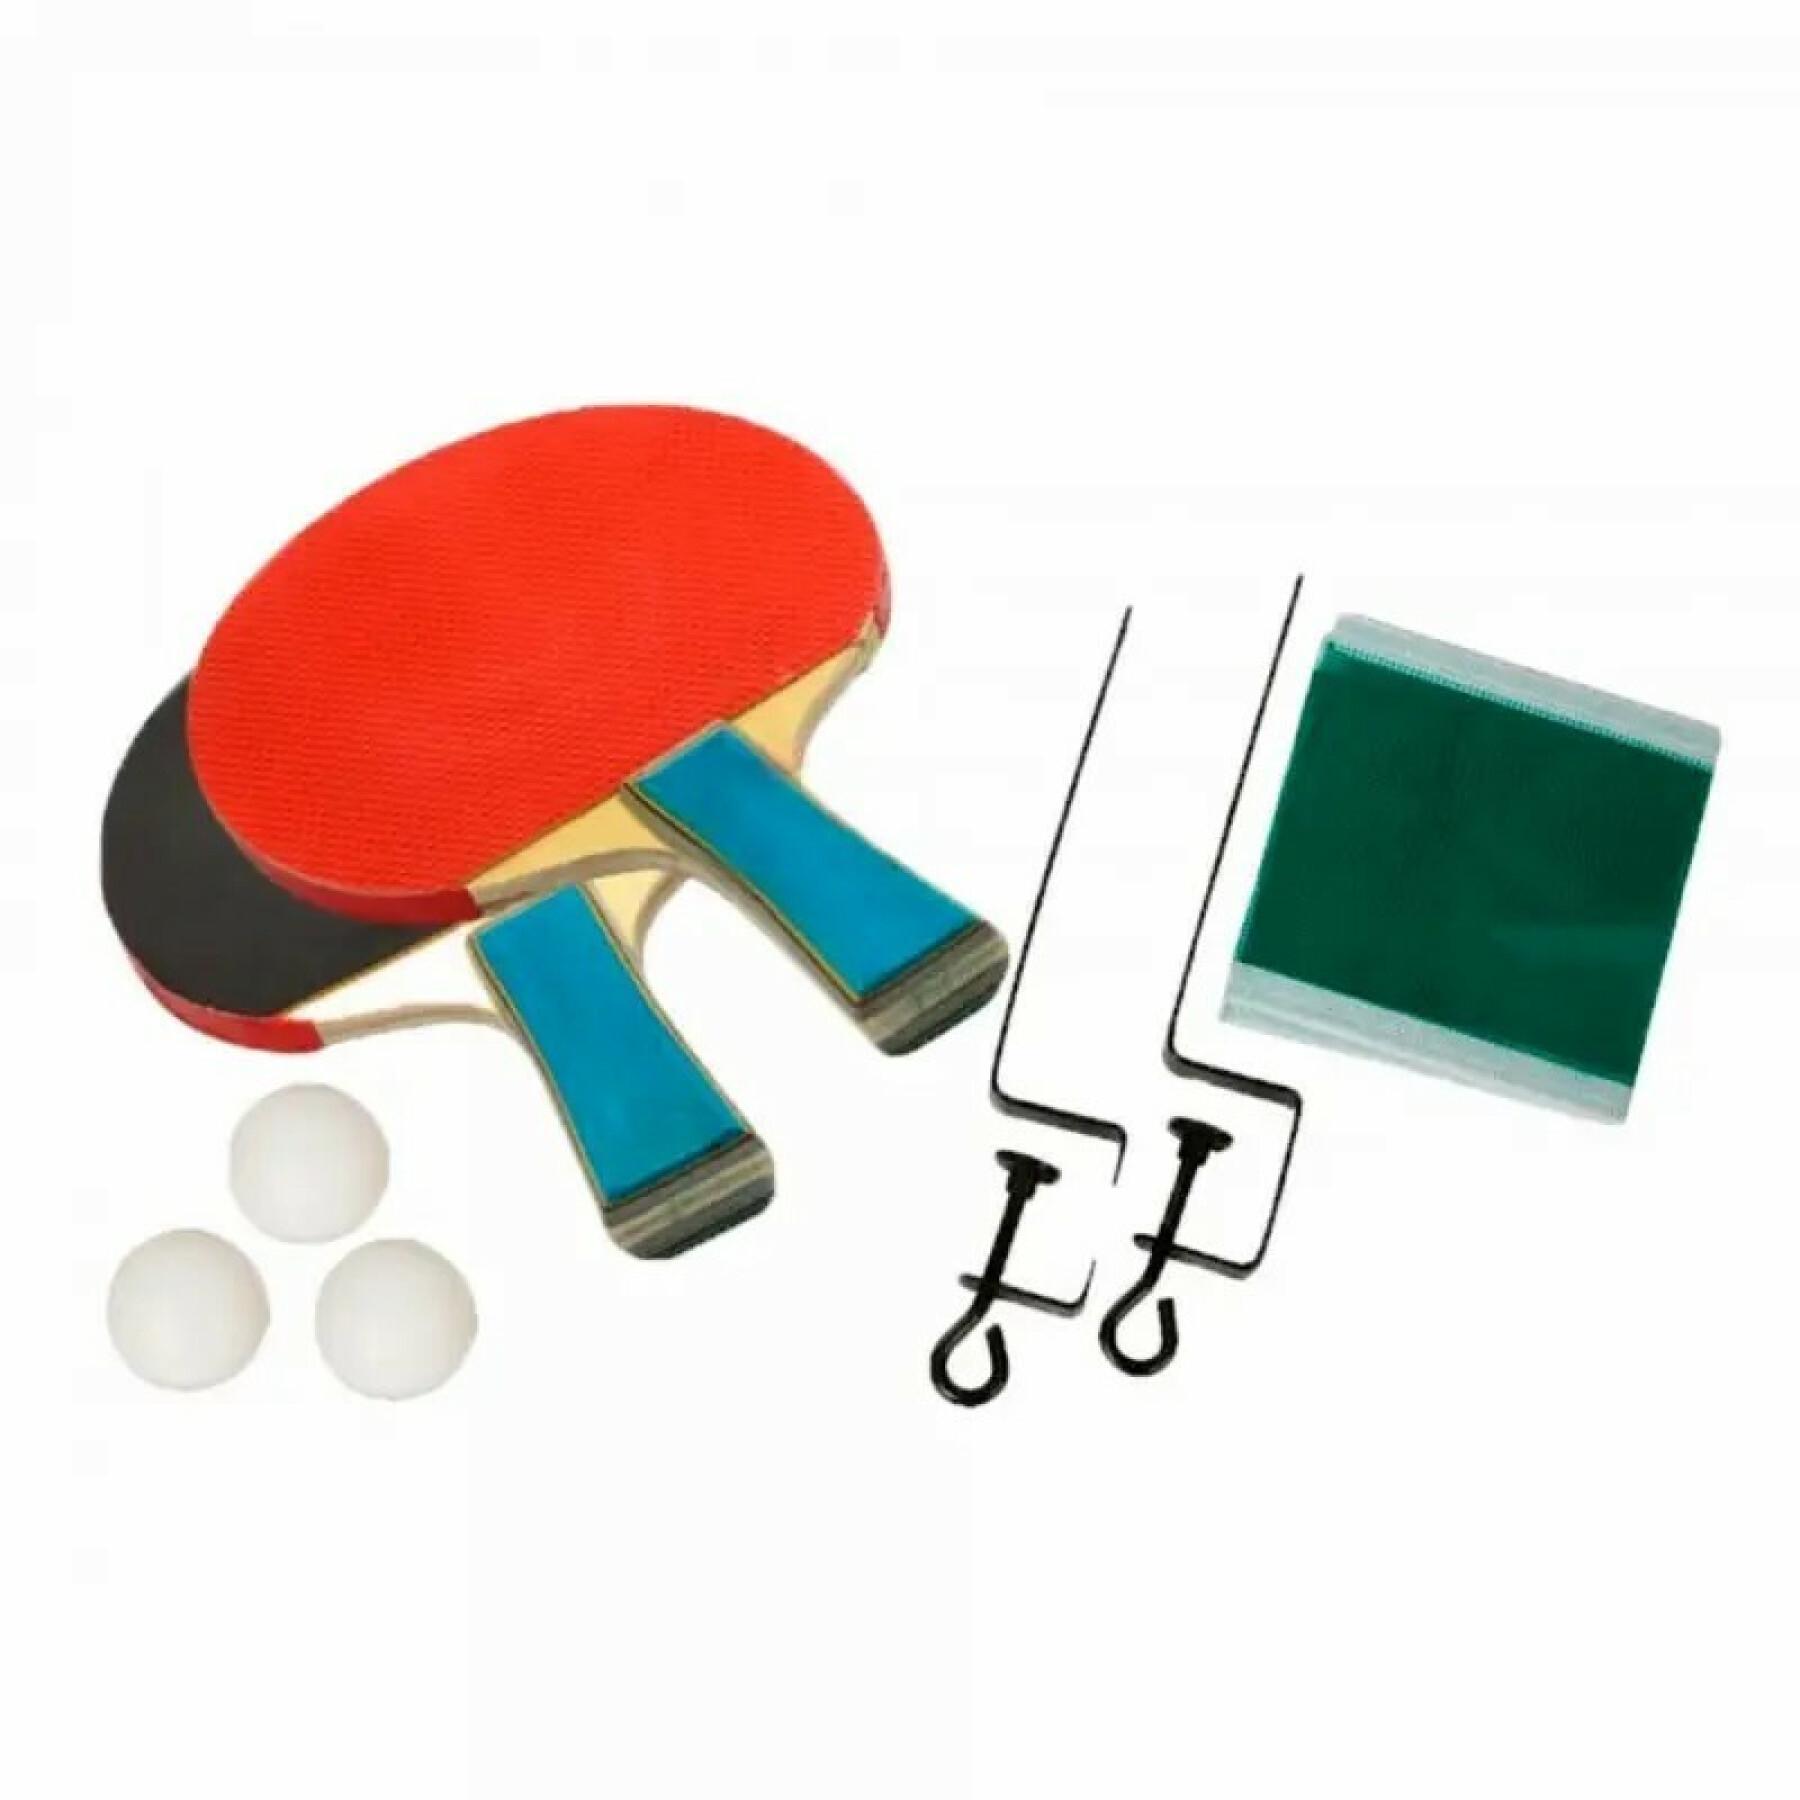 Conjunto de ténis de mesa com 3 bolas e rede Softee